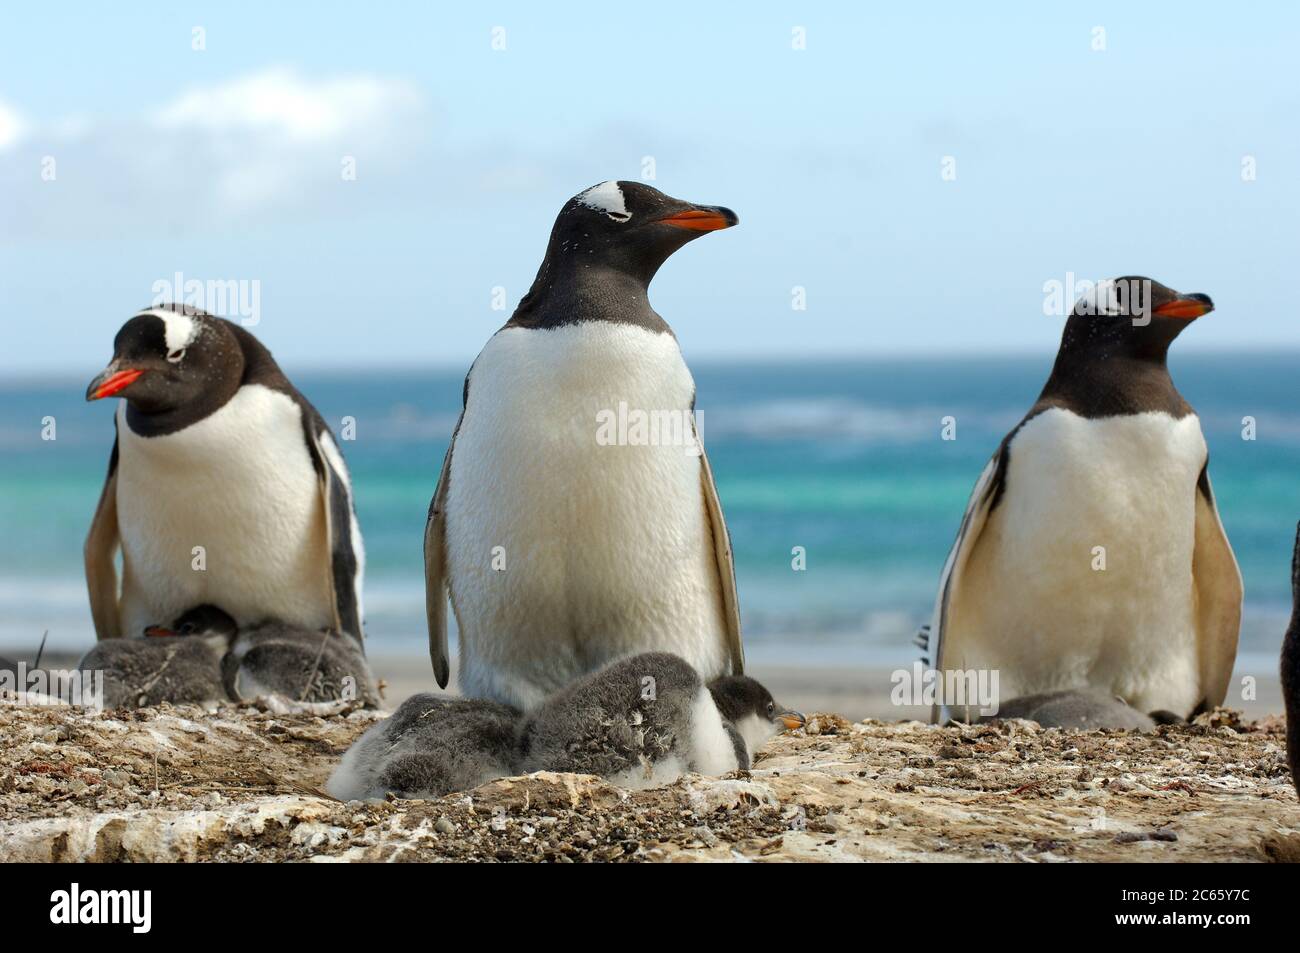 Die kleineren Pinguinarten wie der Gentoo Penguin (Pygoscelis papua) können zwei Küken züchten. Nach der Fütterung mit nachgeschütteltem Krill haben die Küken, wie diese ca. zwei Wochen alten, manchmal rote Flecken auf ihren Federn. Stockfoto